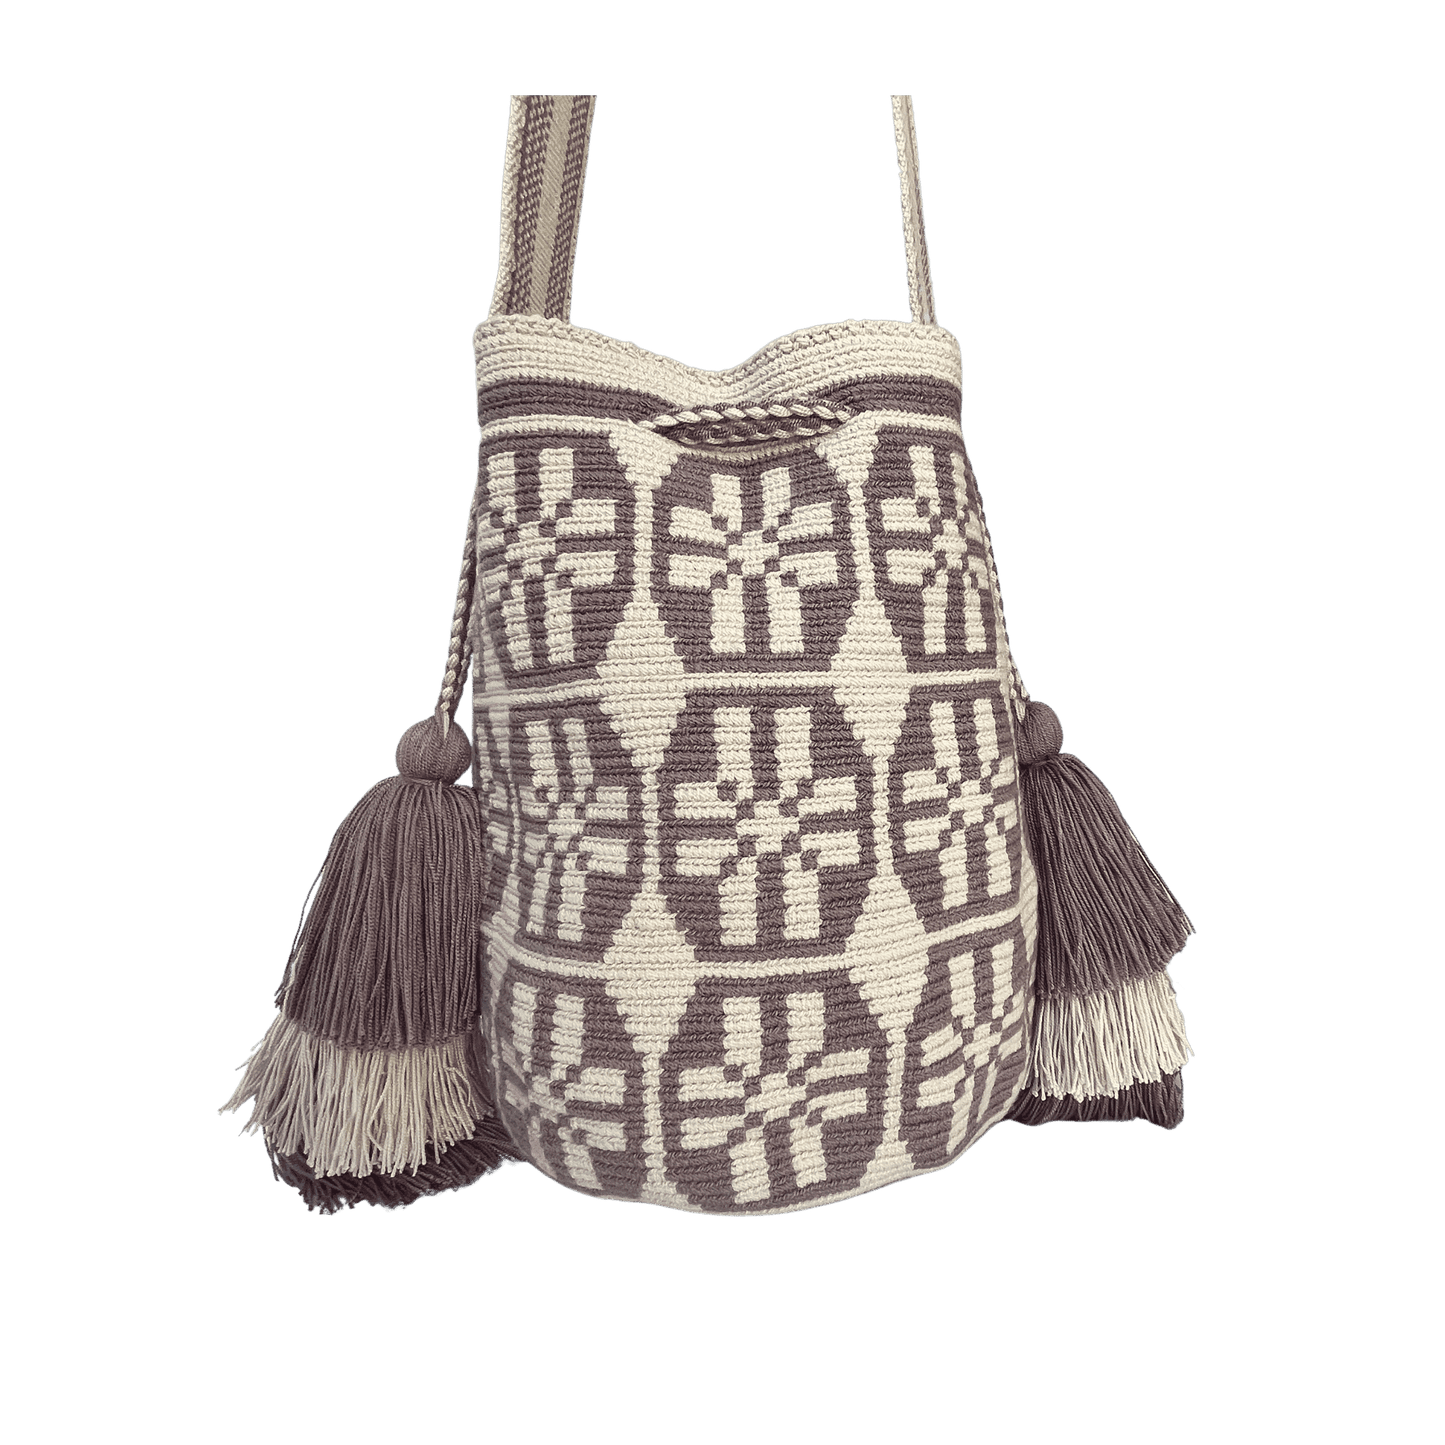 Mochila wayuu tejida en una hebra colores beige y morado con pompones a los lados